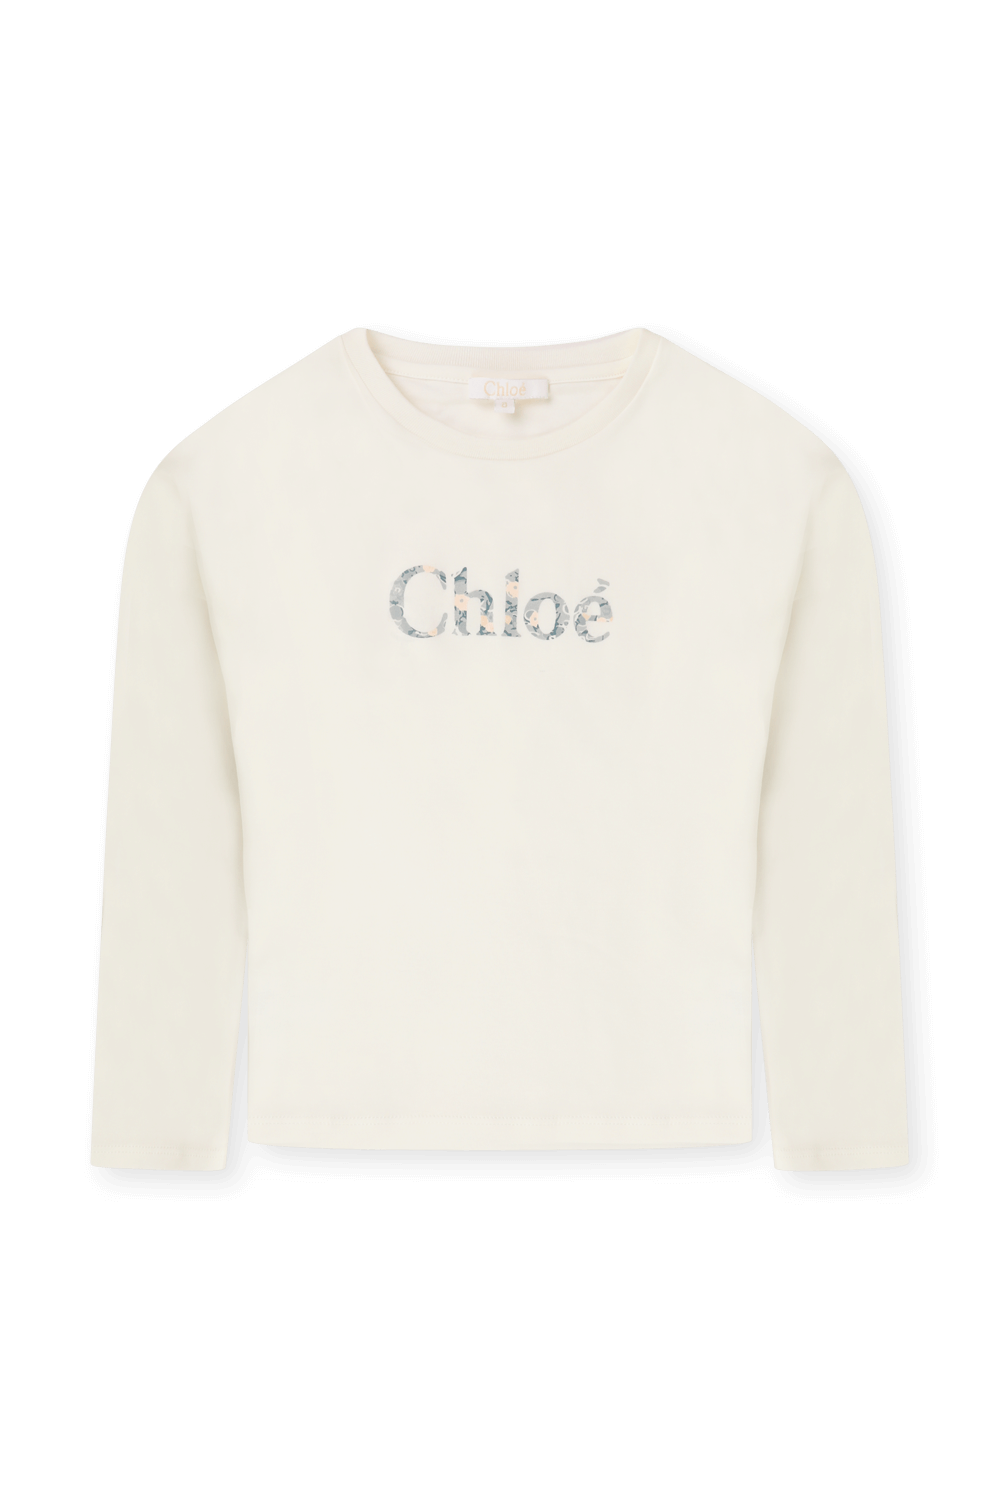 גילאי 6-12 חולצת טי ארוכה עם הדפס לוגו פרחוני CHLOE KIDS